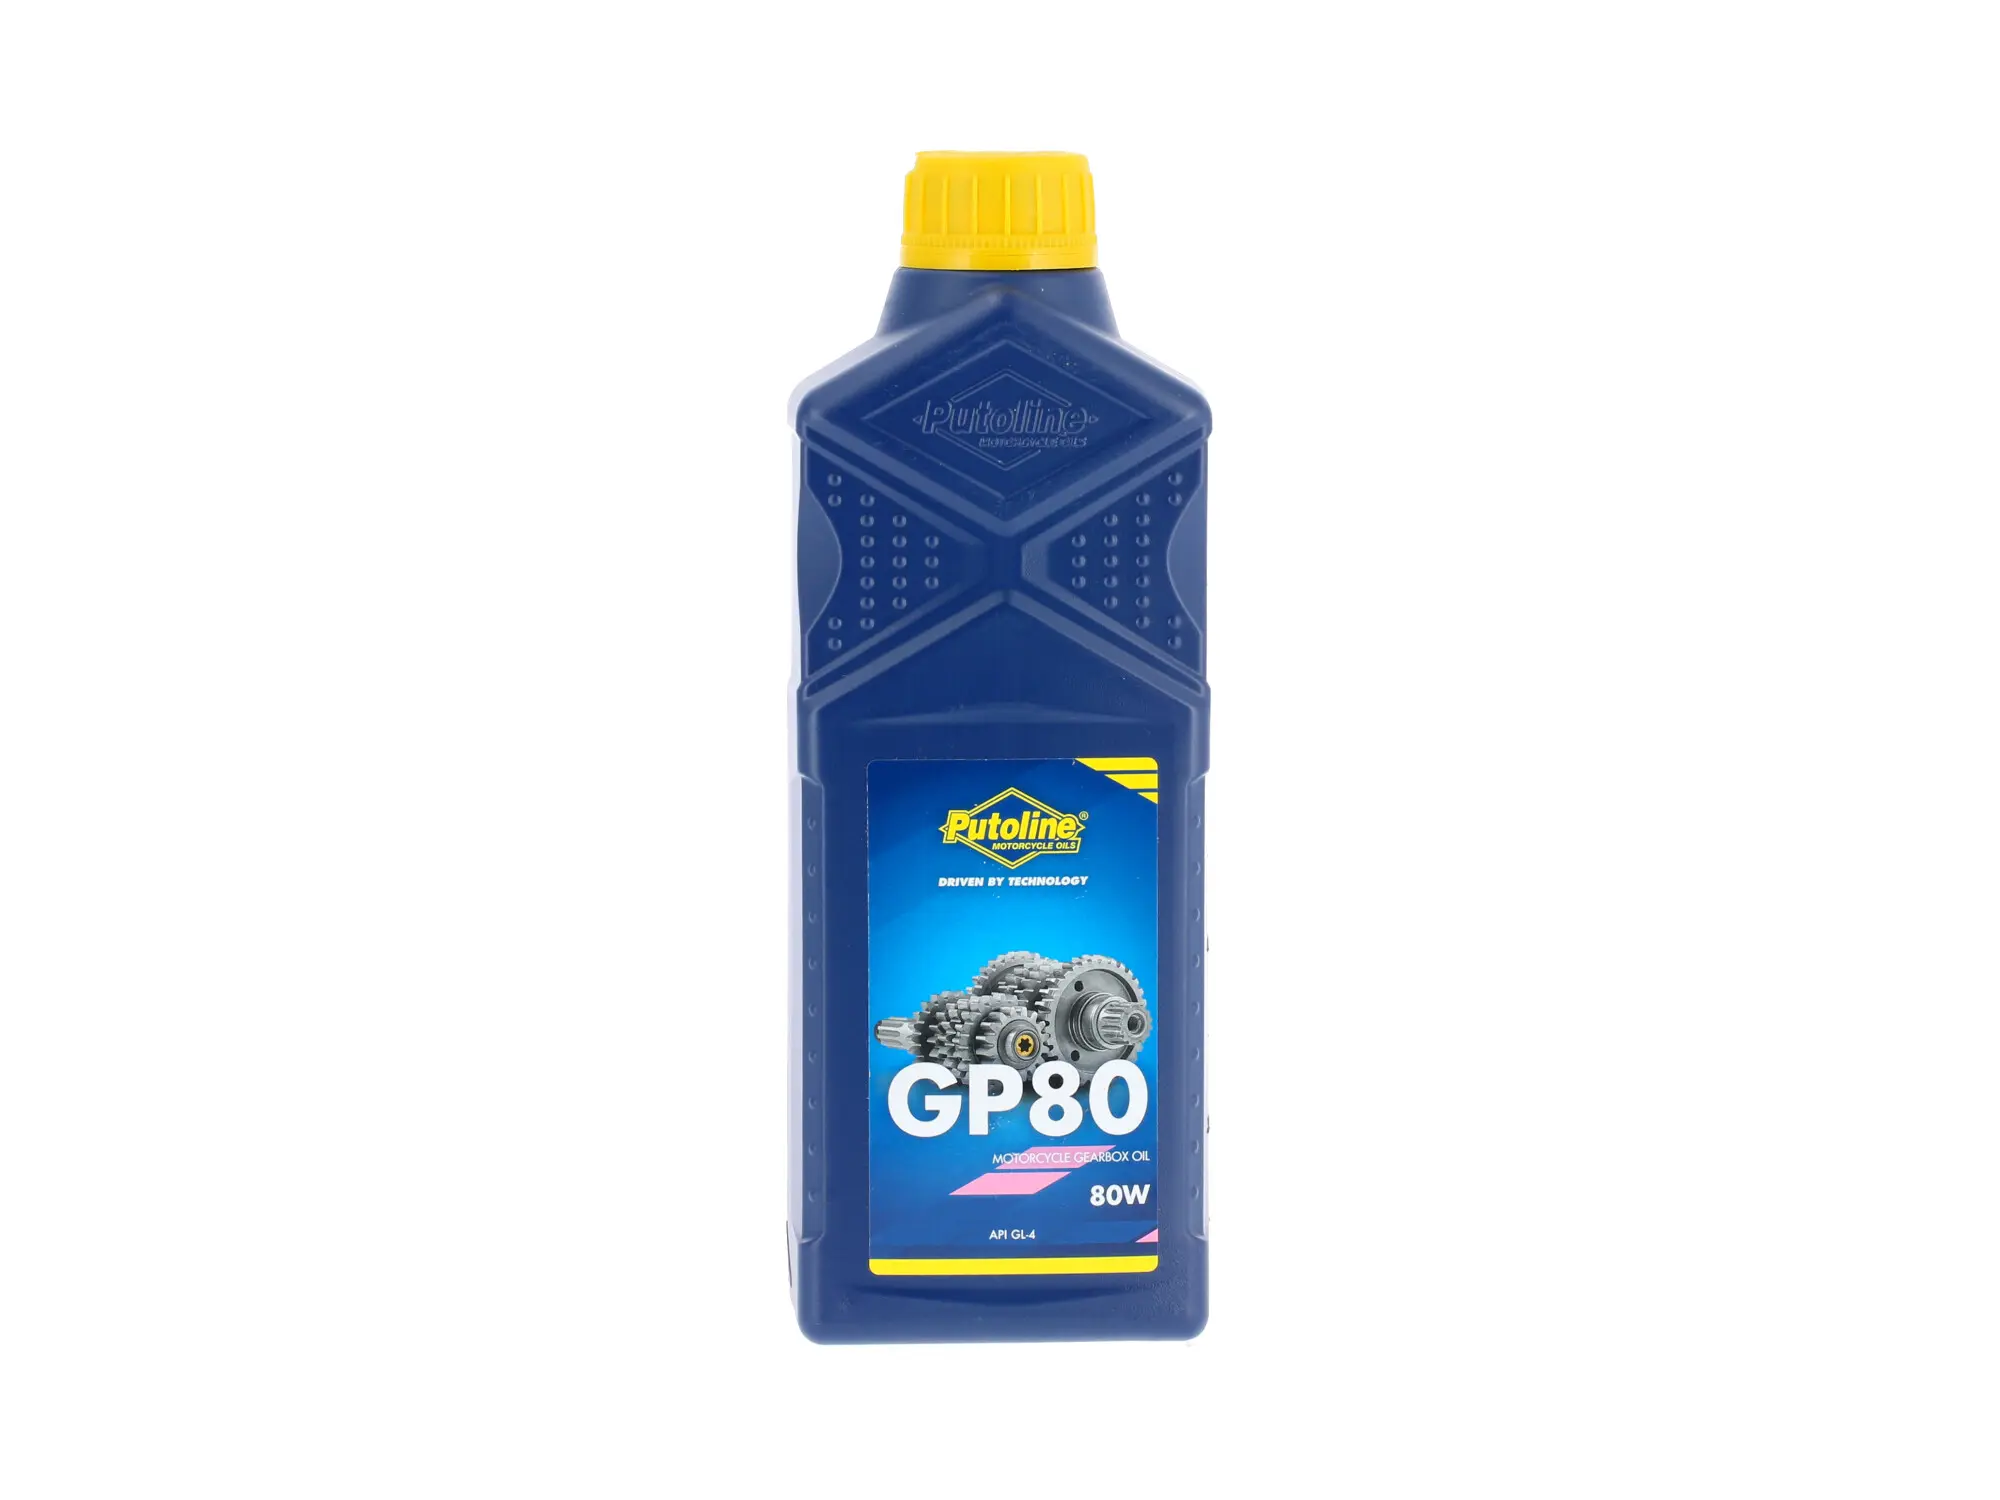 PUTOLINE GP80, Getriebeöl mineralisch (API GL4) für Simson & MZ - 1 Liter, Art.-Nr.: 10072347 - Bild 1